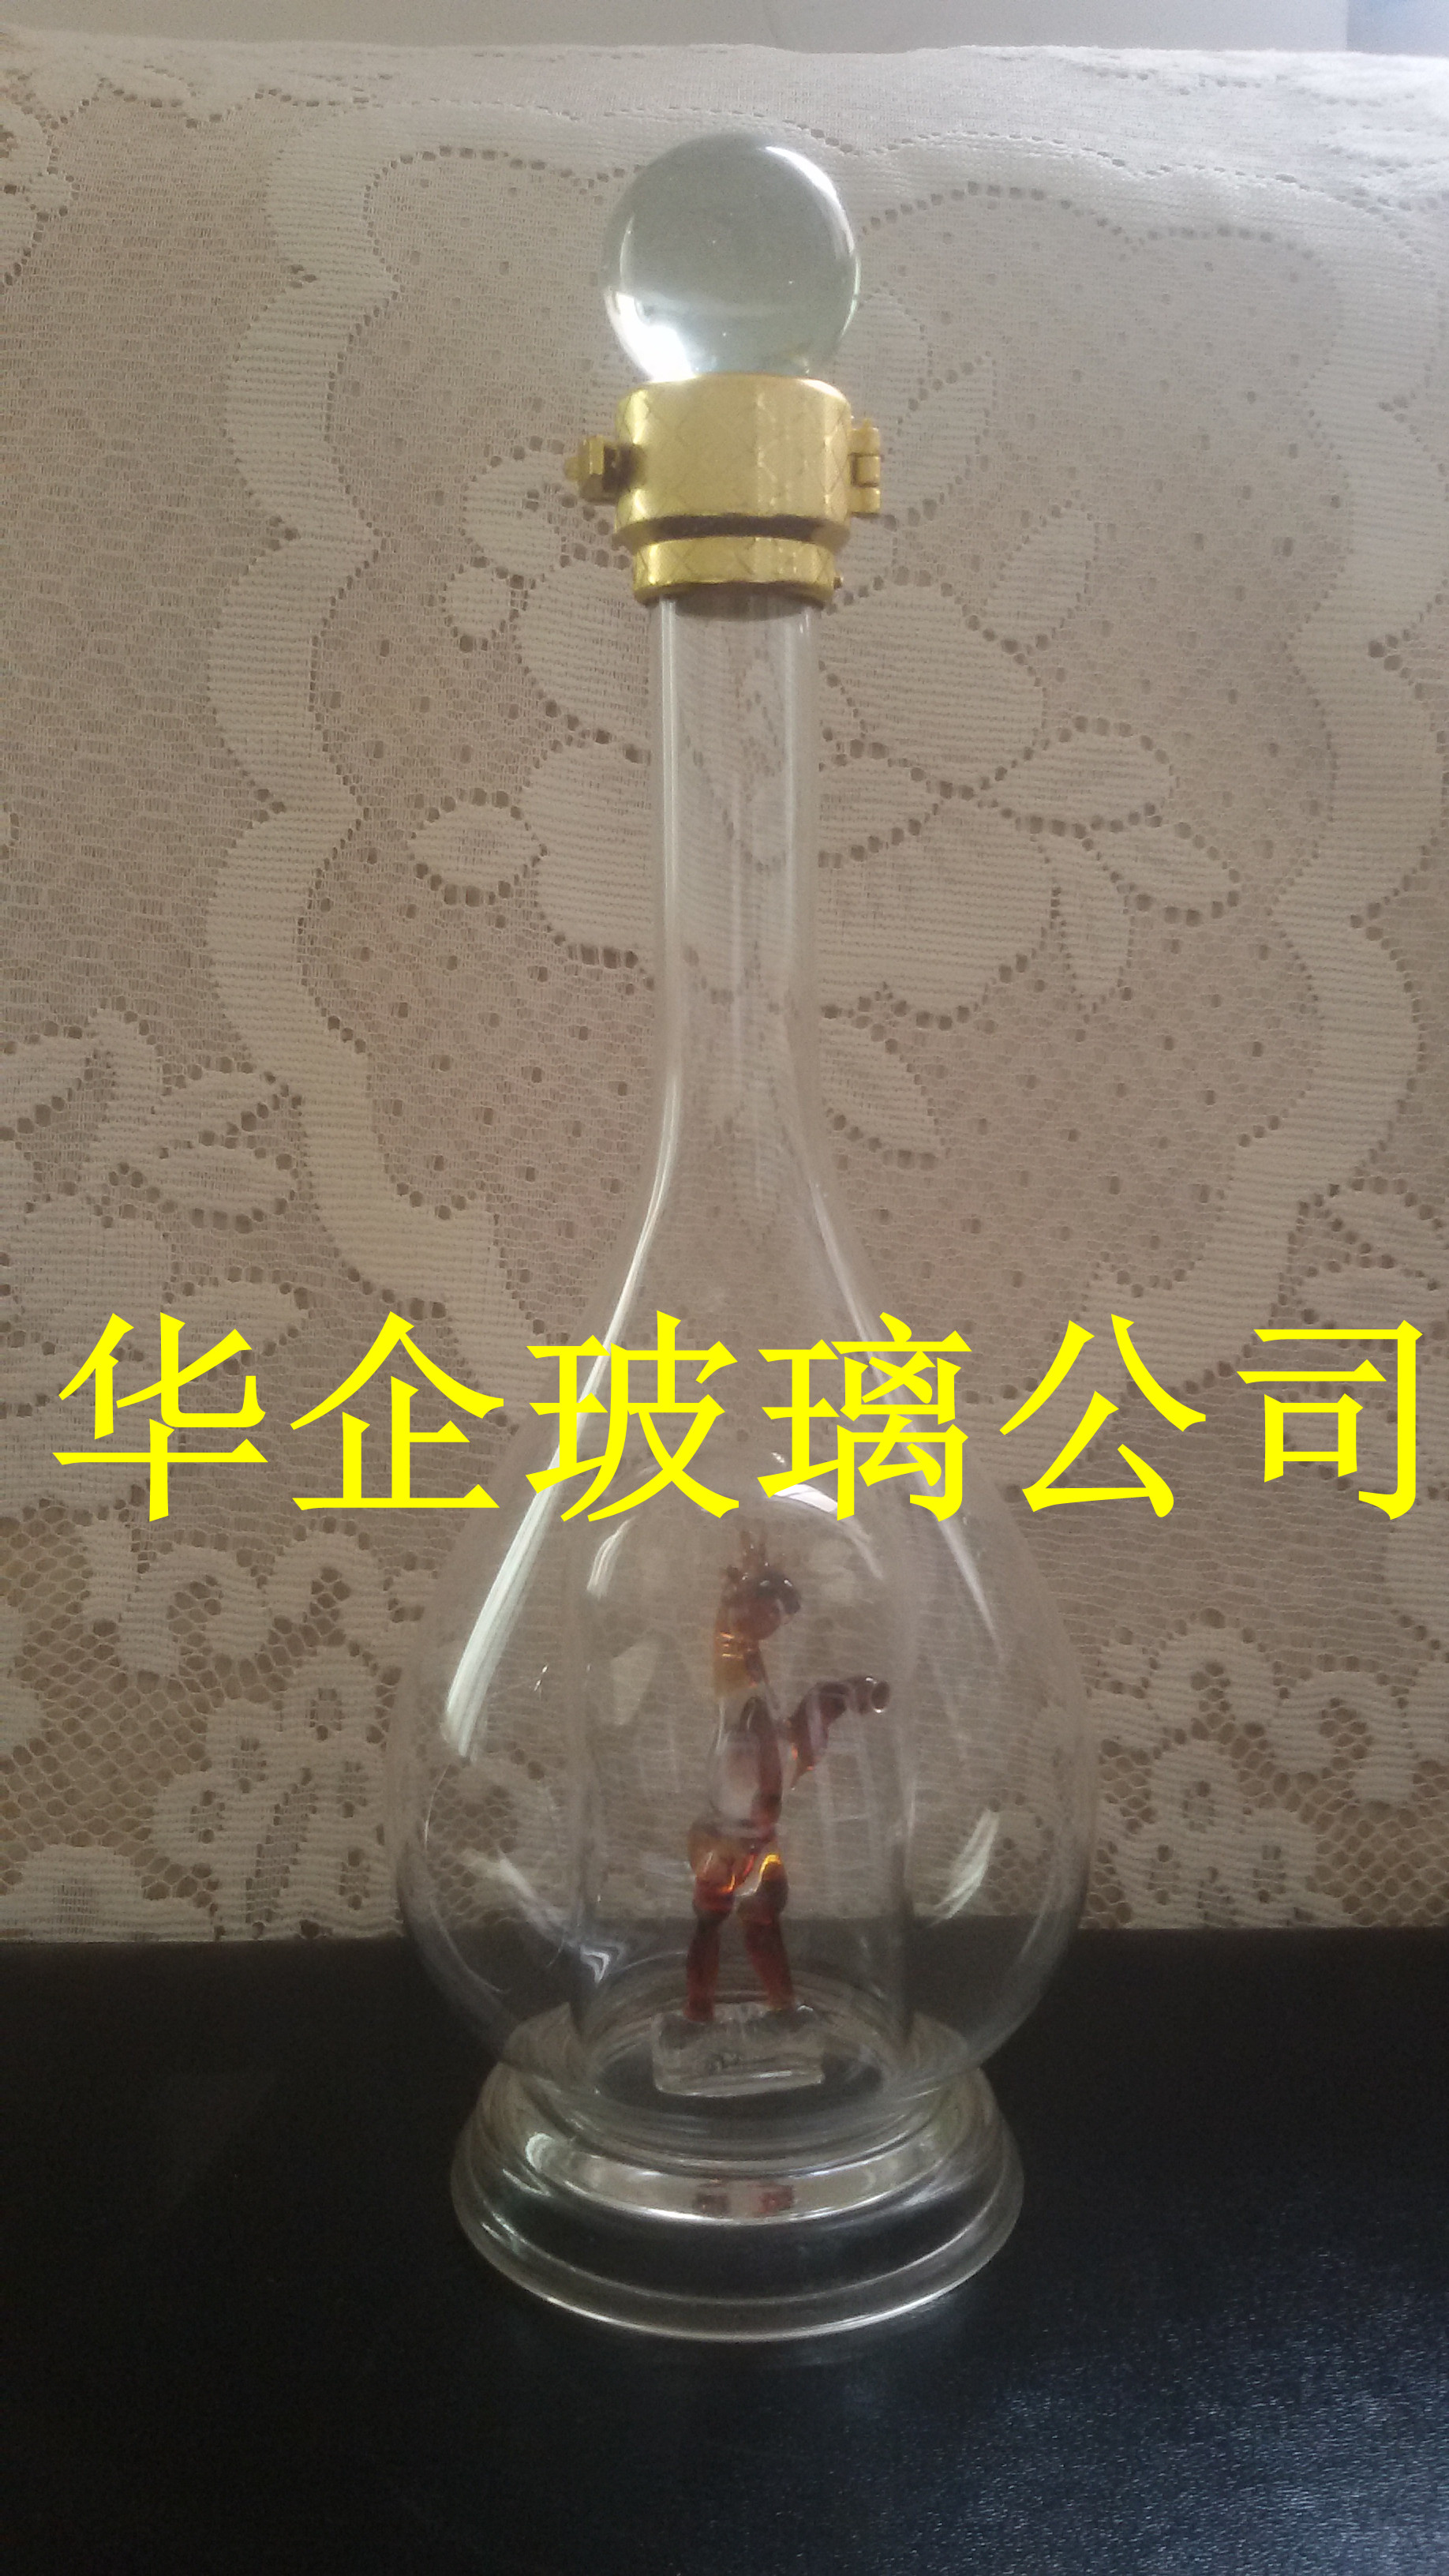 沧州市河北玻璃酒瓶厂造型工艺酒瓶厂家